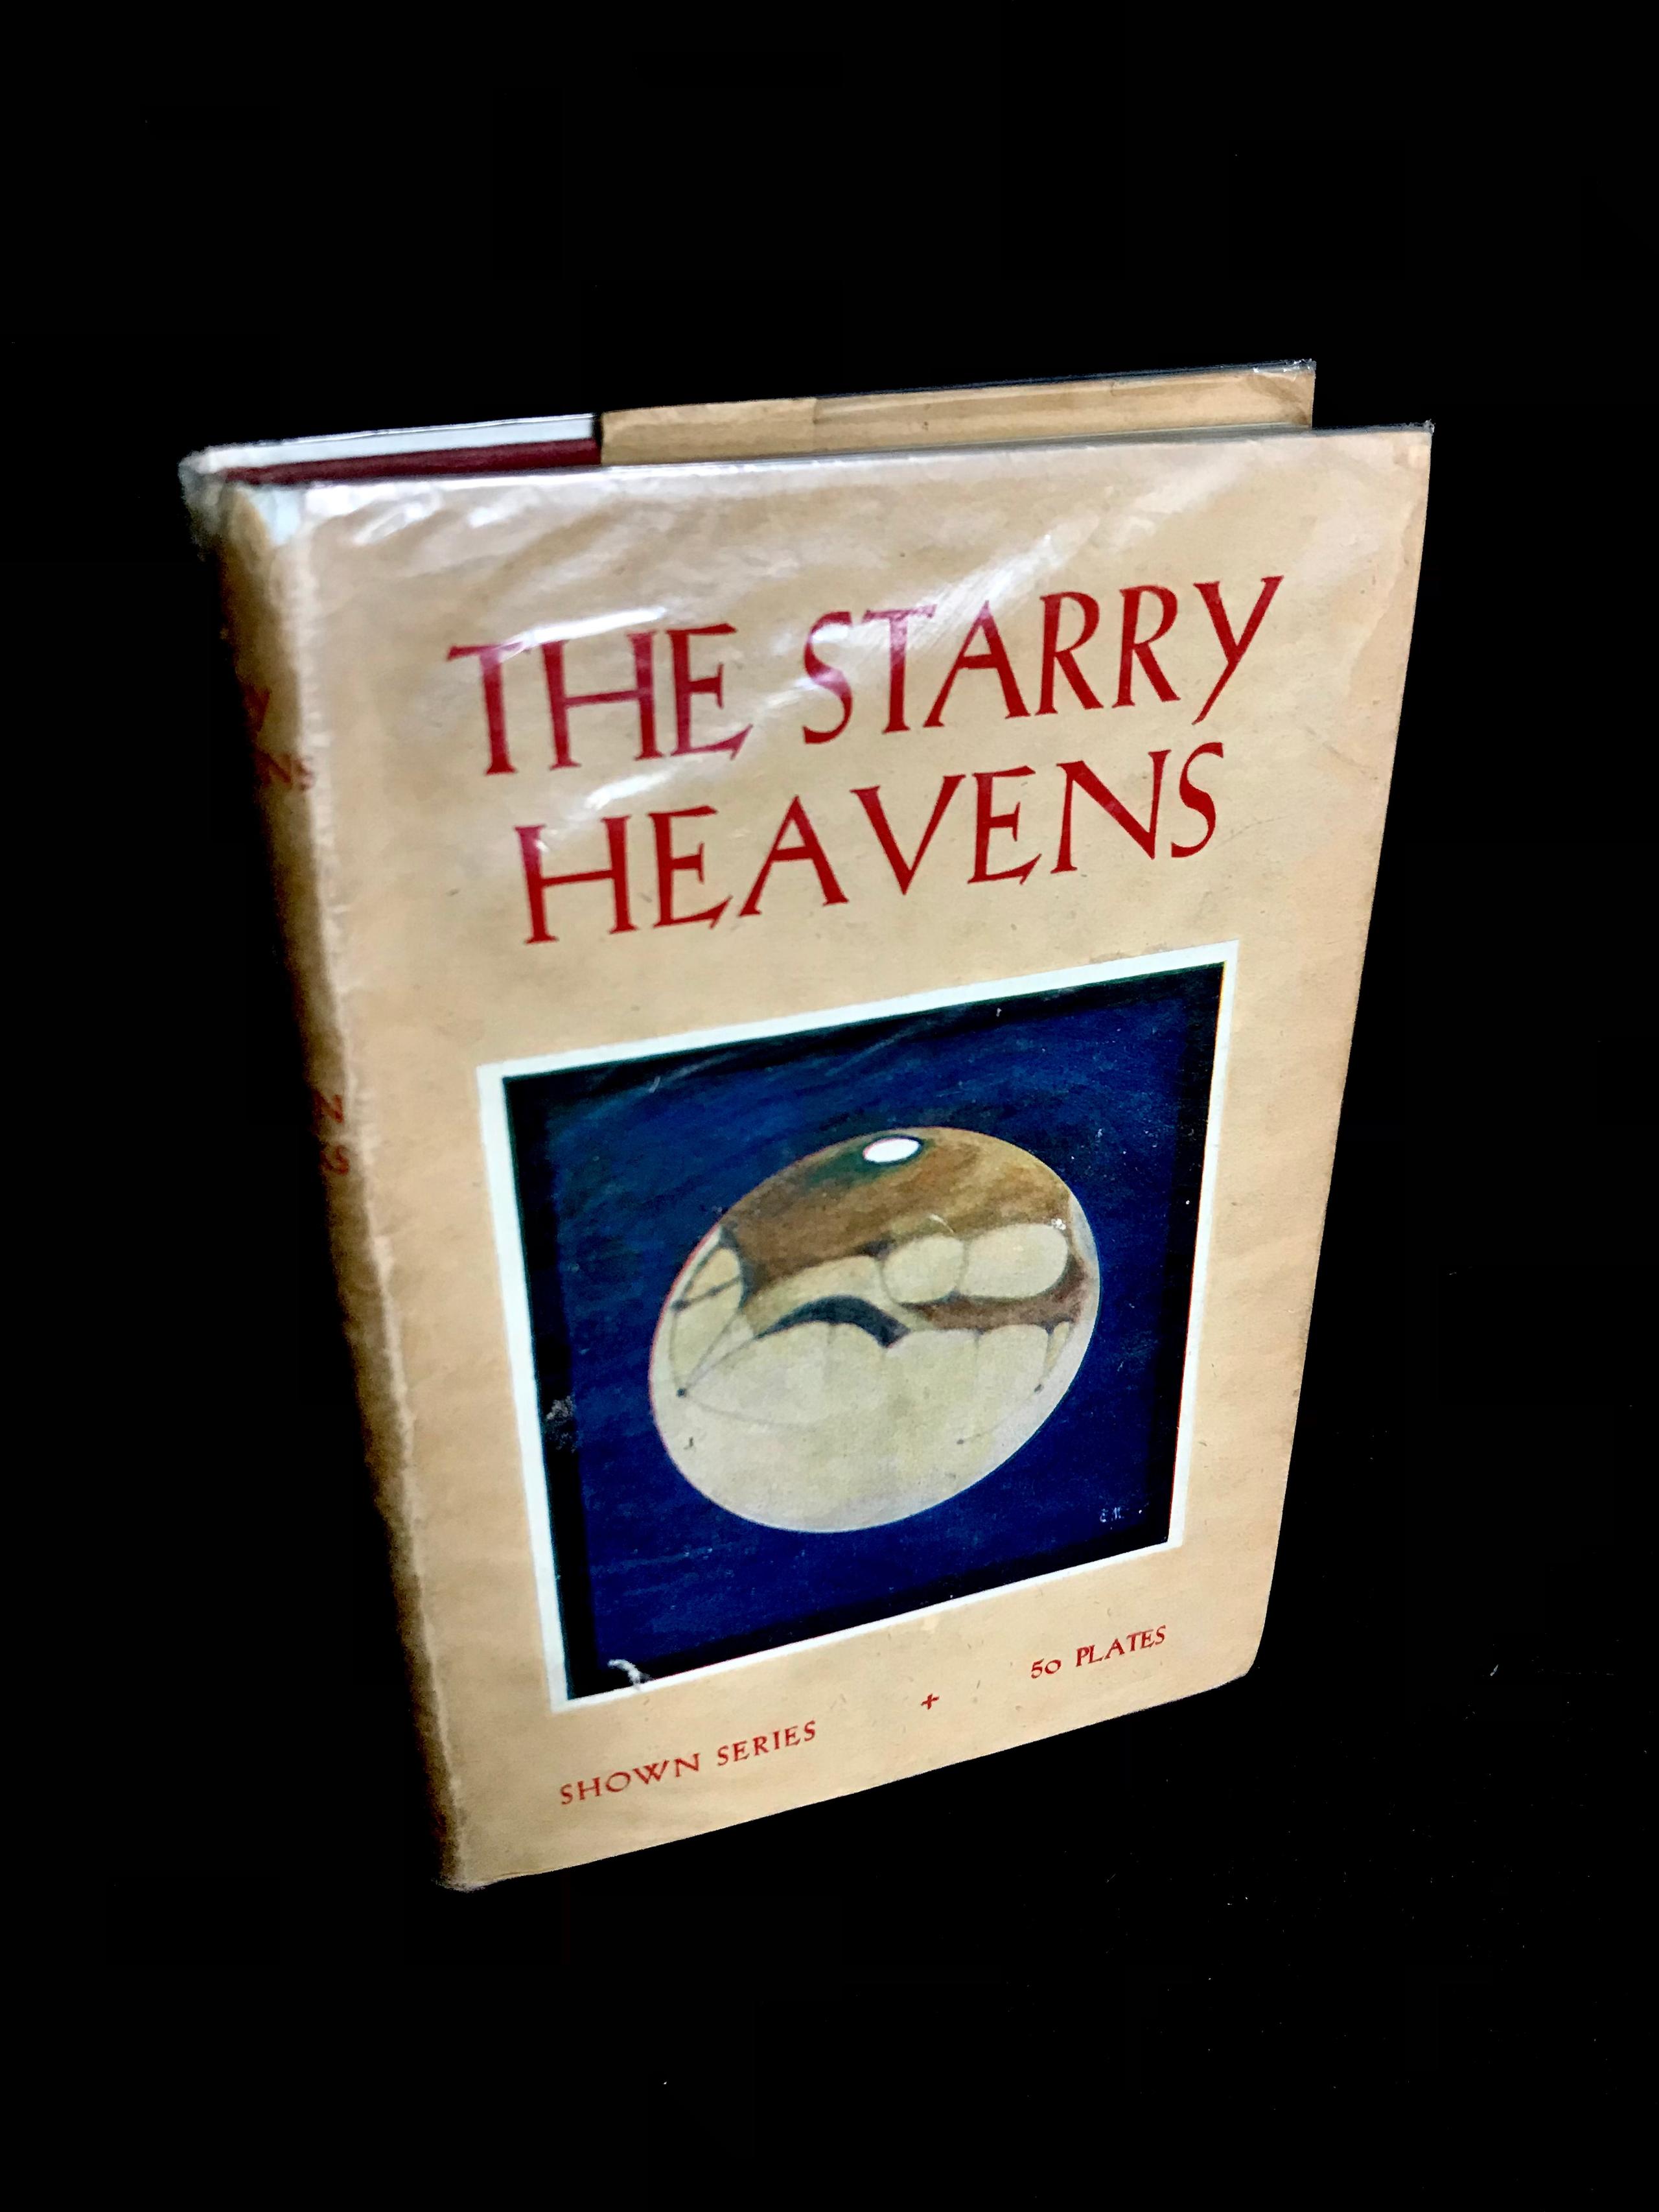 The Starry Heavens by Ellison Hawks